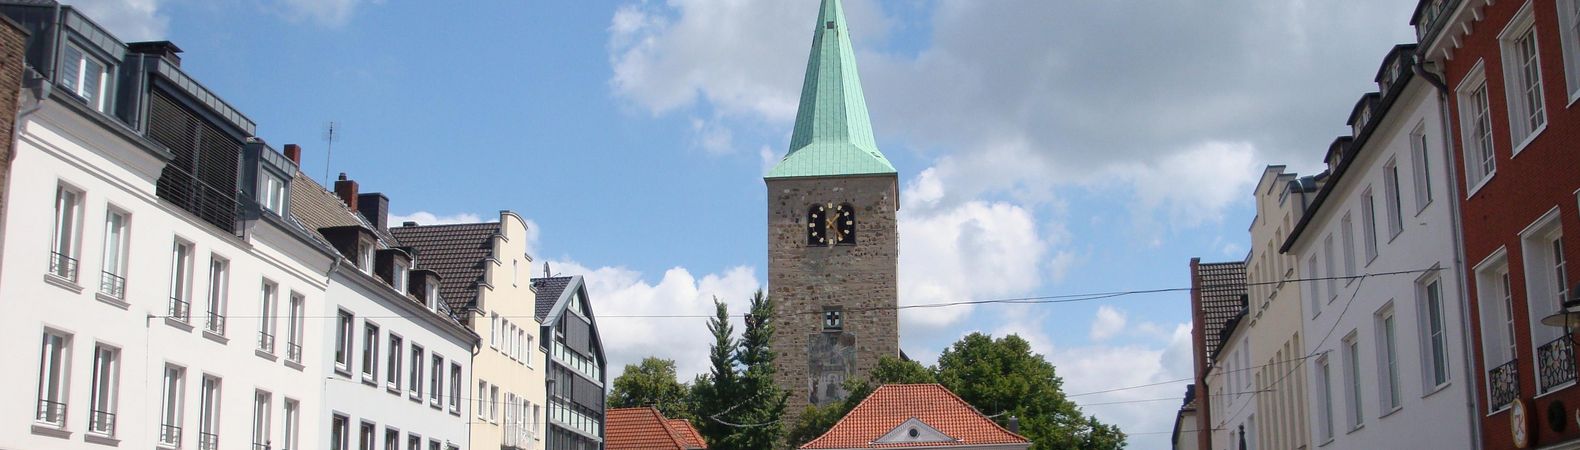 Die Kirche St. Agatha auf dem Marktplatz in Dorsten